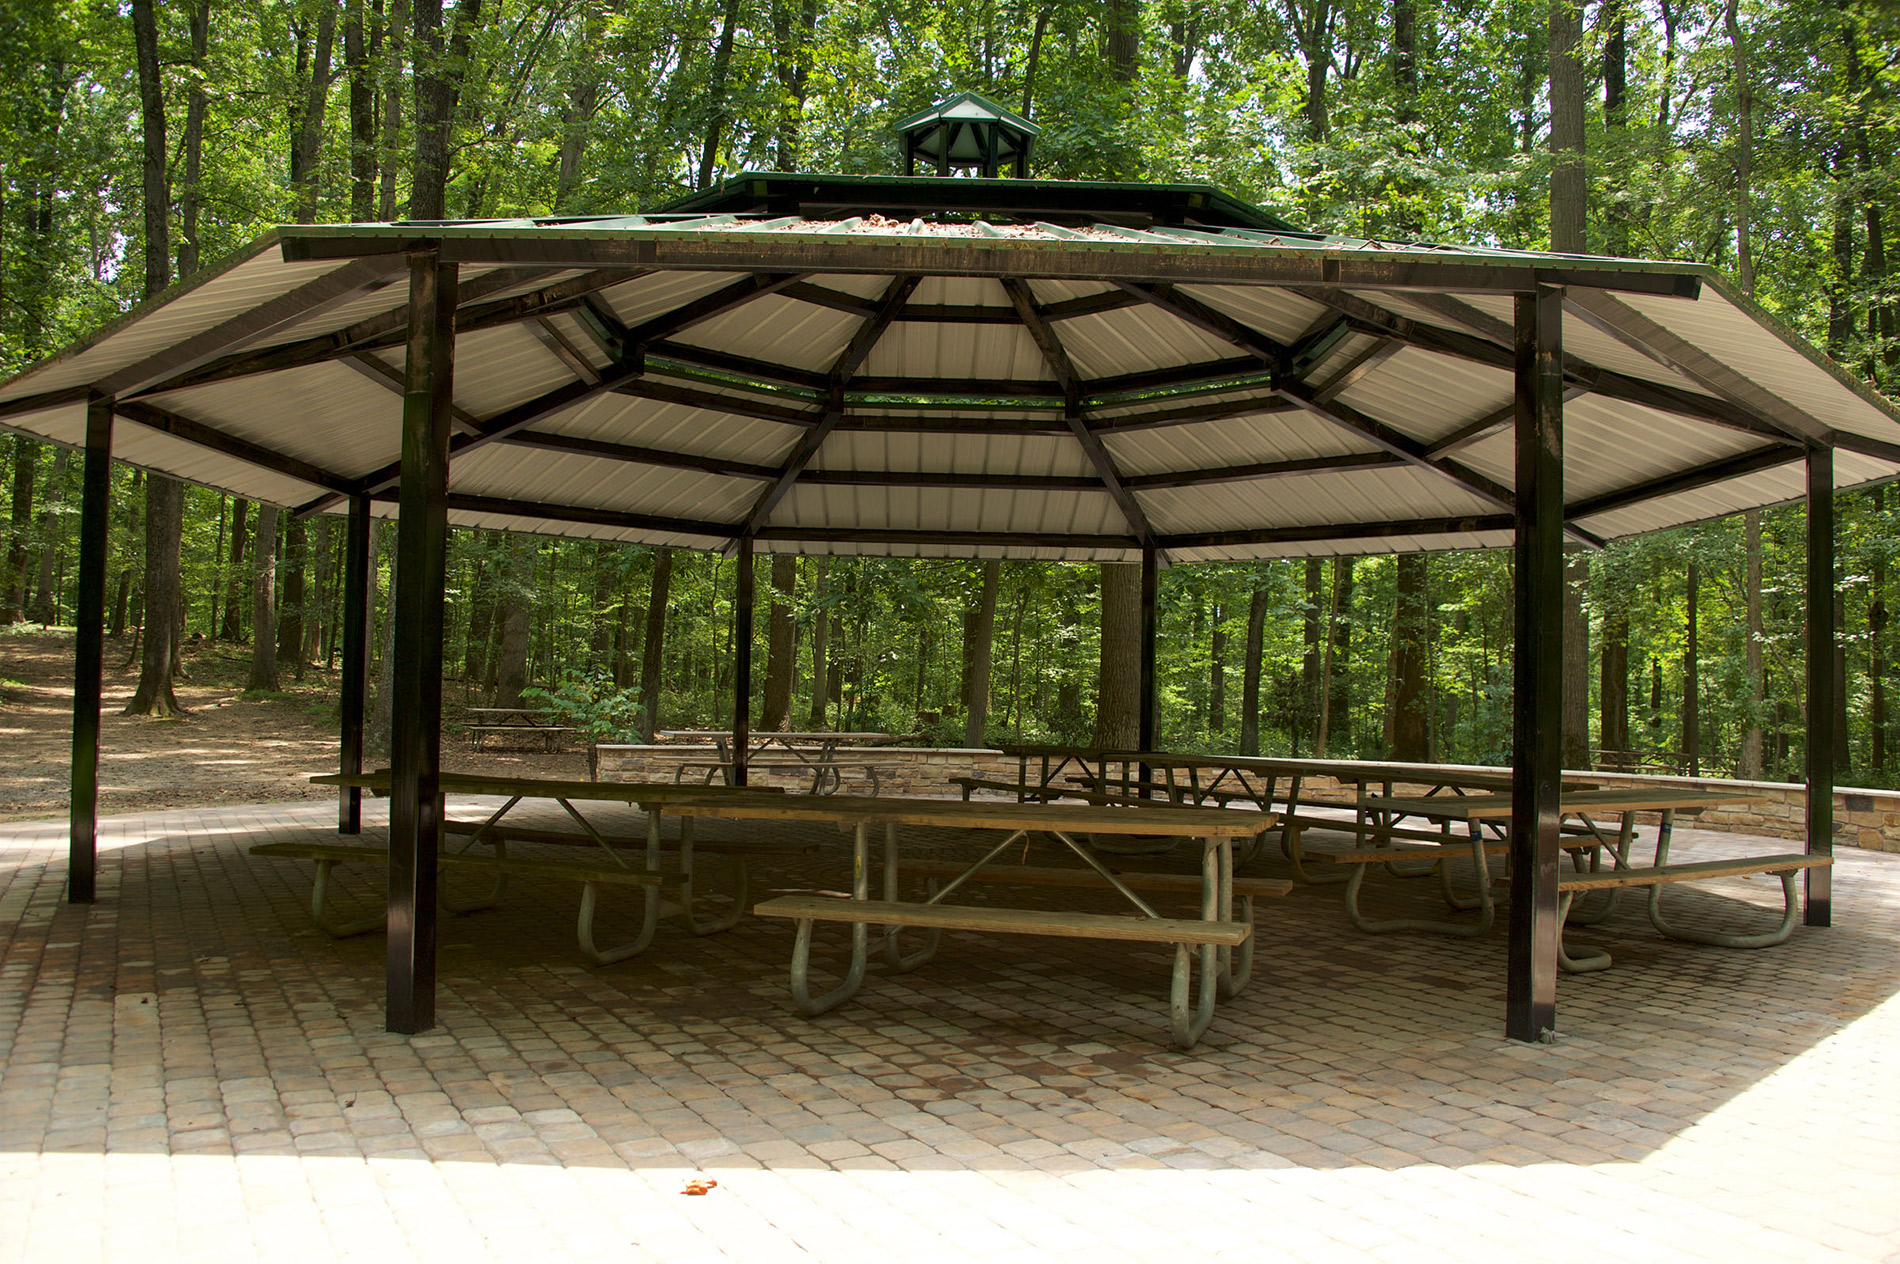 Cabin John Regional Park Picnic shelter